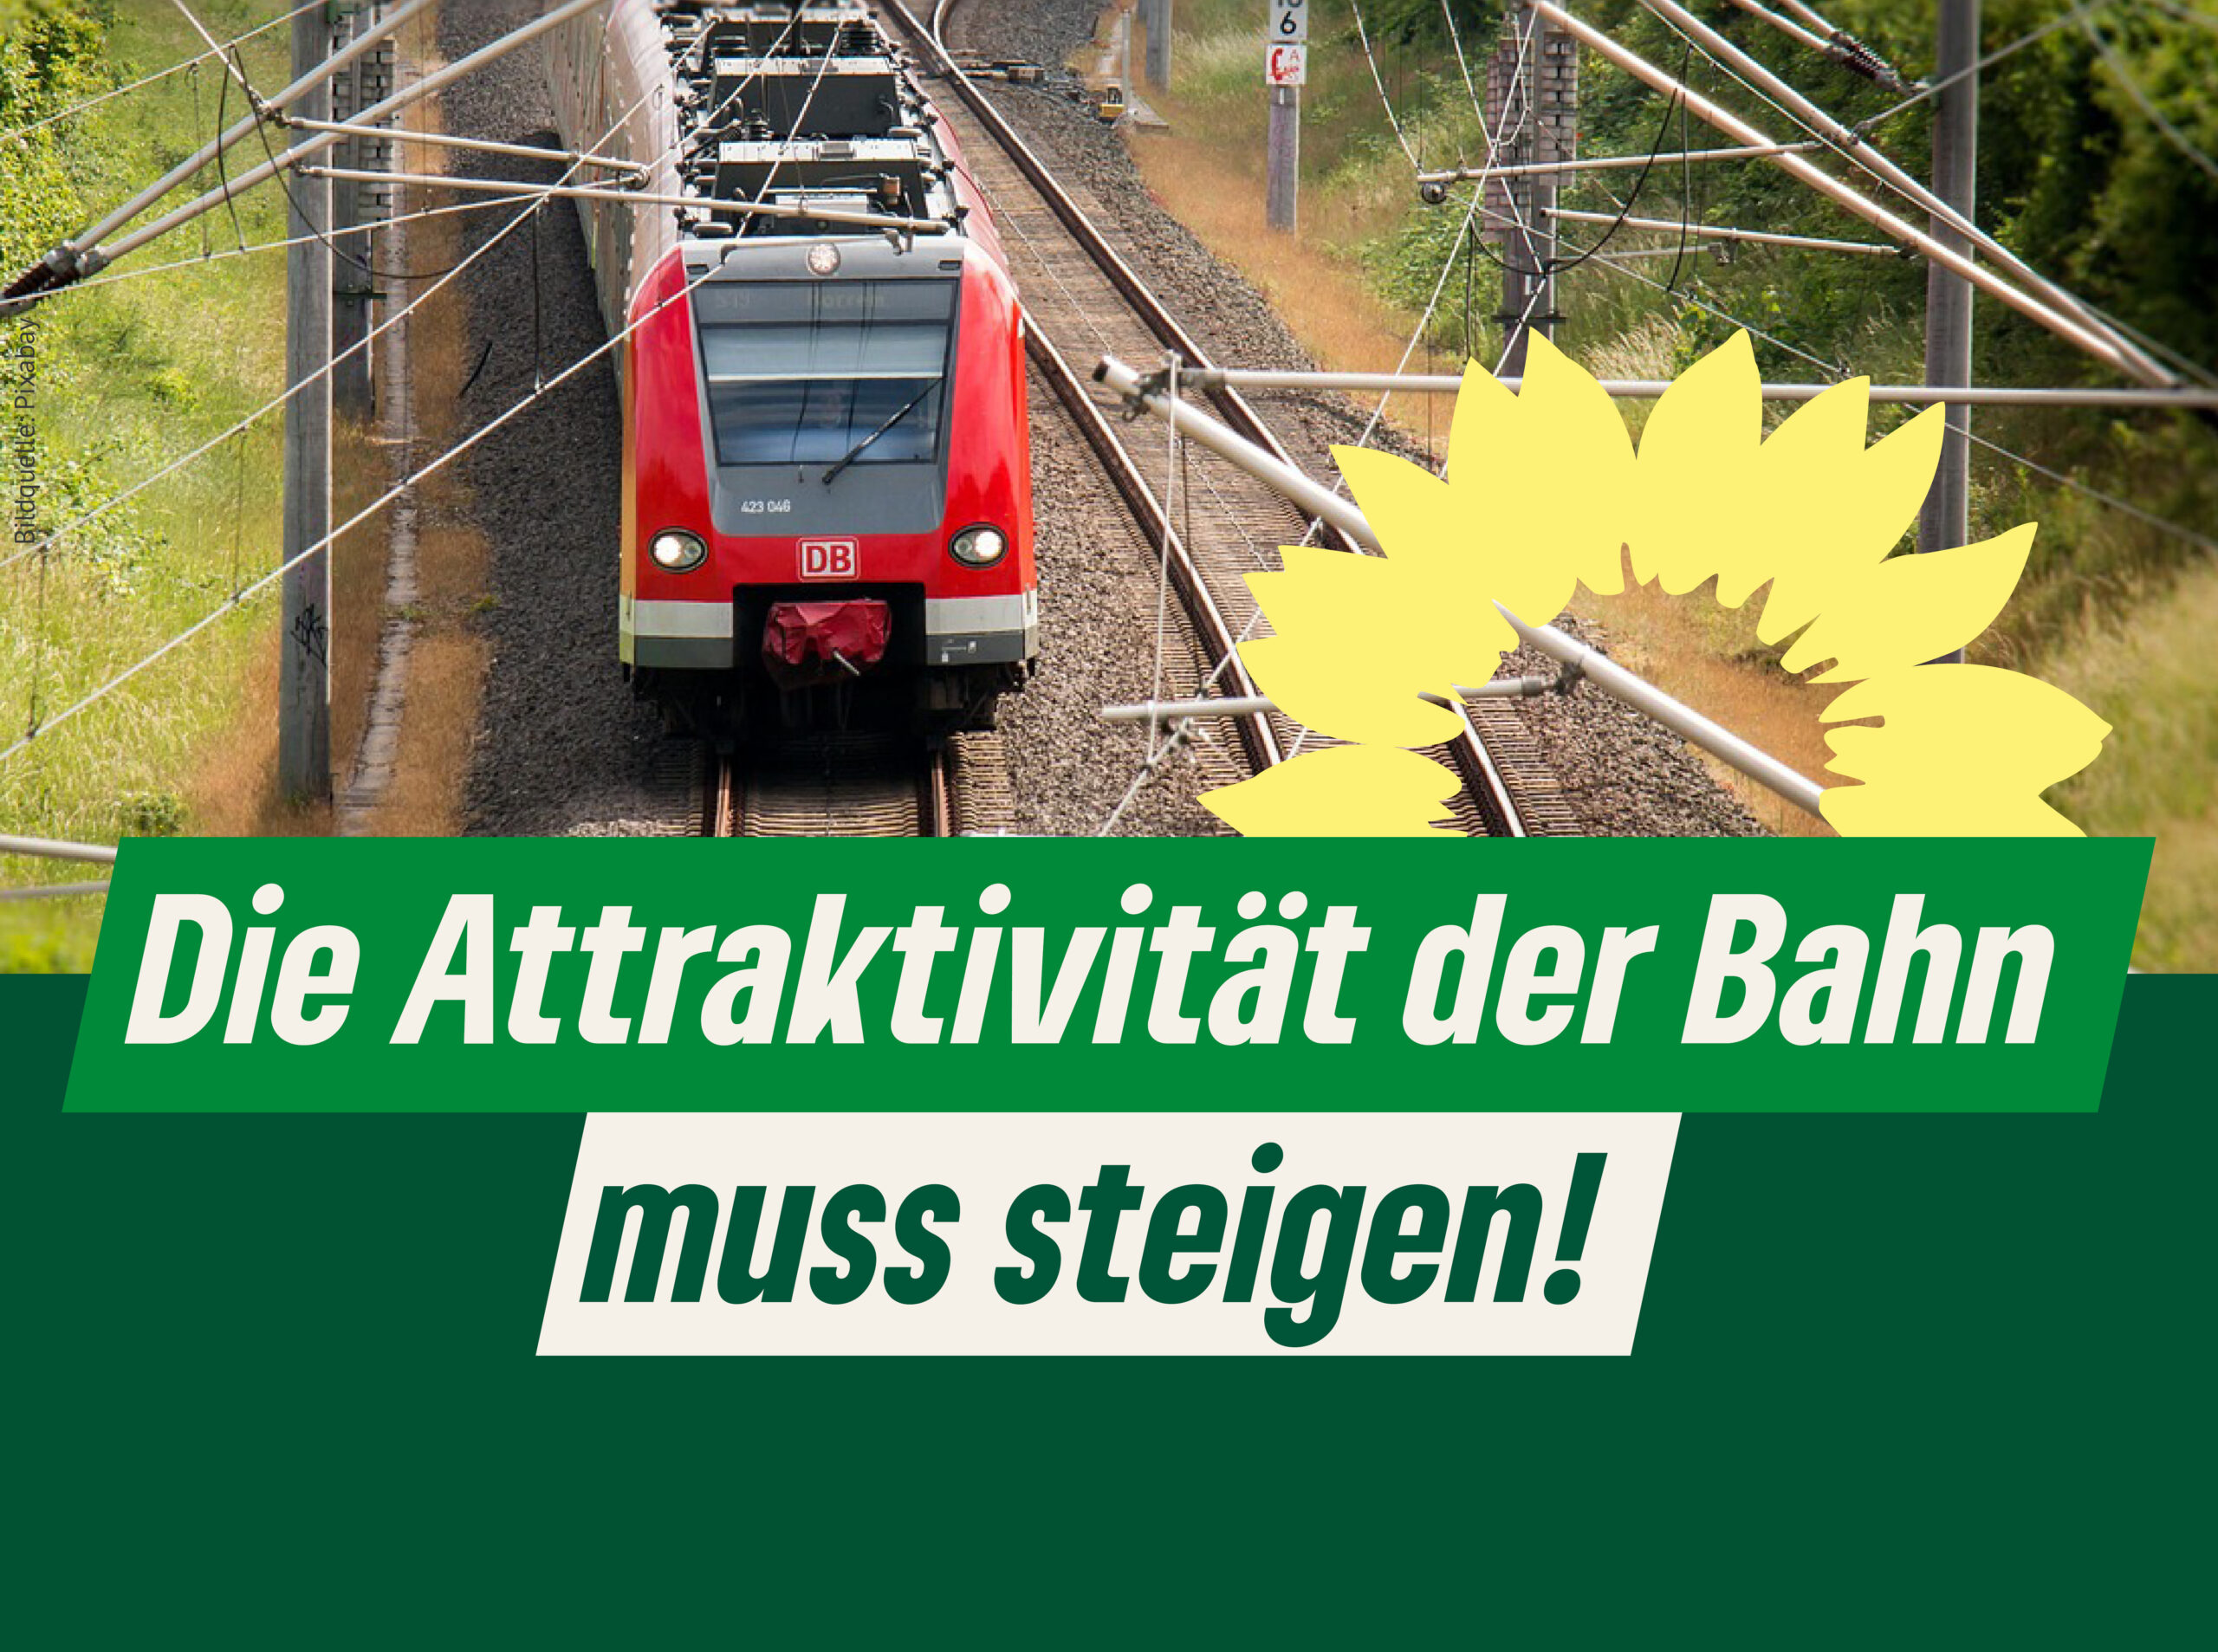 Schriftzug: "Die Attraktivität der Bahn muss steigen!" neben der Sonnenblume der Grünen. Darüber ein Foto von einer roten S-Bahn mit der Bildquellenangabe Pixabay.